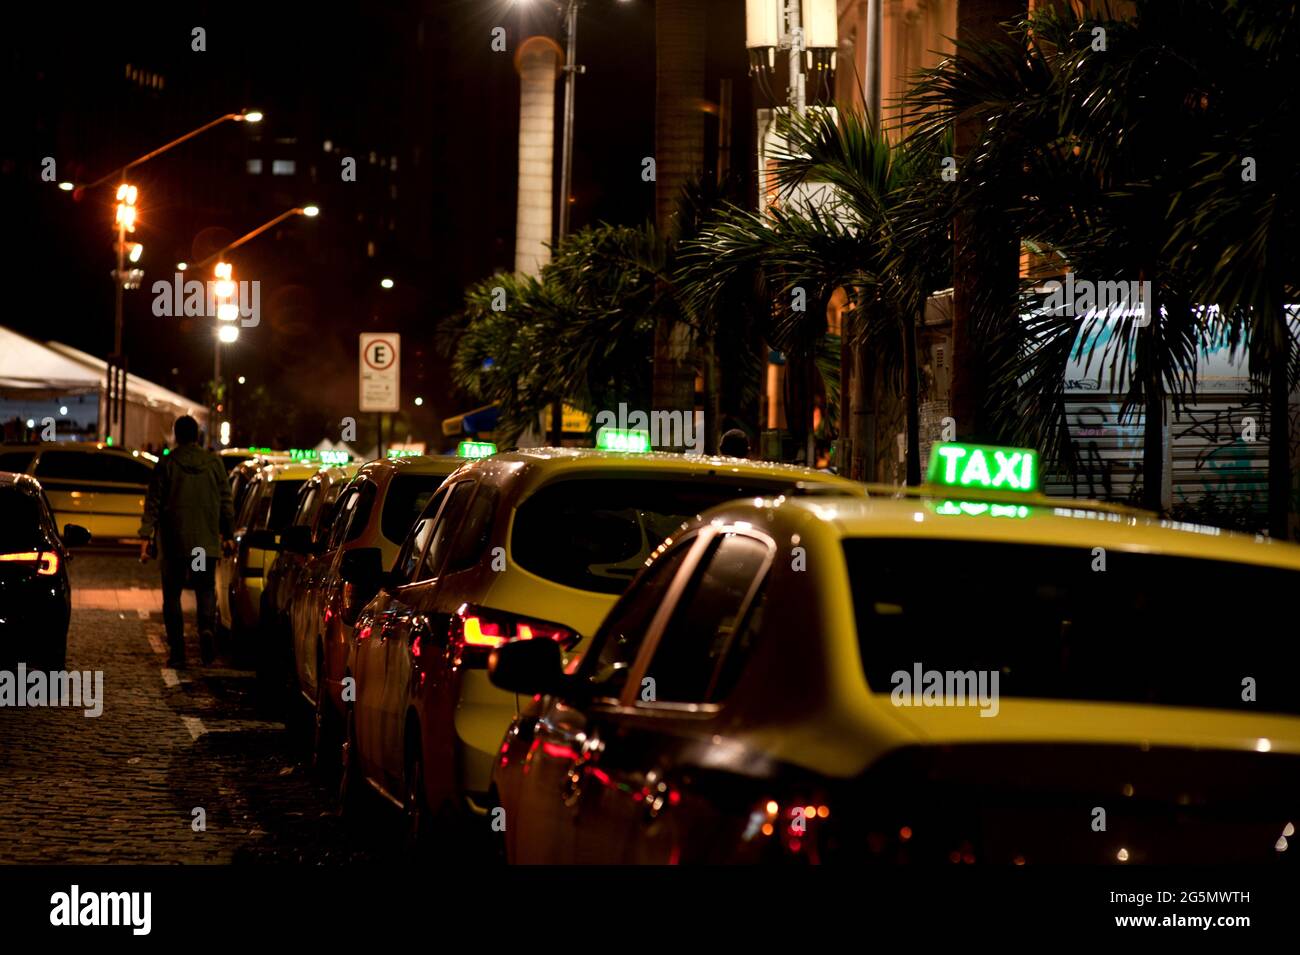 Sud America, Brasile: Coda di taxi sul lato del Teatro Municipale nel centro di Rio de Janeiro di notte. Cartelli per taxi illuminati. Cabine parcheggiate in fila. Foto Stock